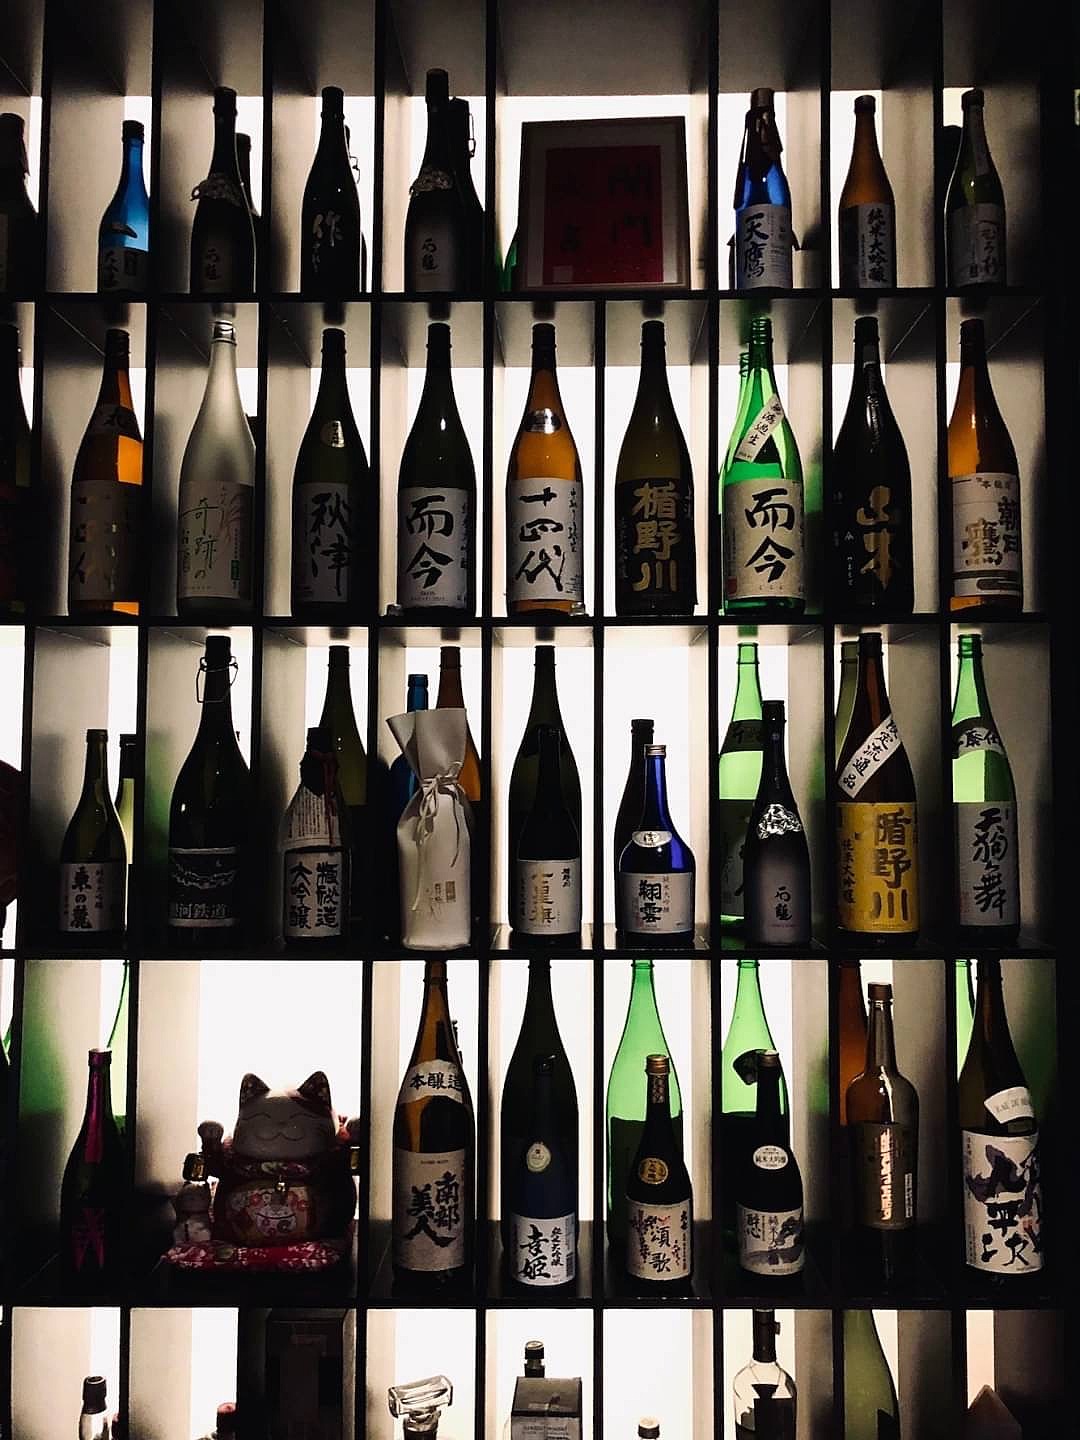 【独身日本酒会】〜ちょっといい日本酒とおつまみを楽しむ会〜 @八丁堀駅